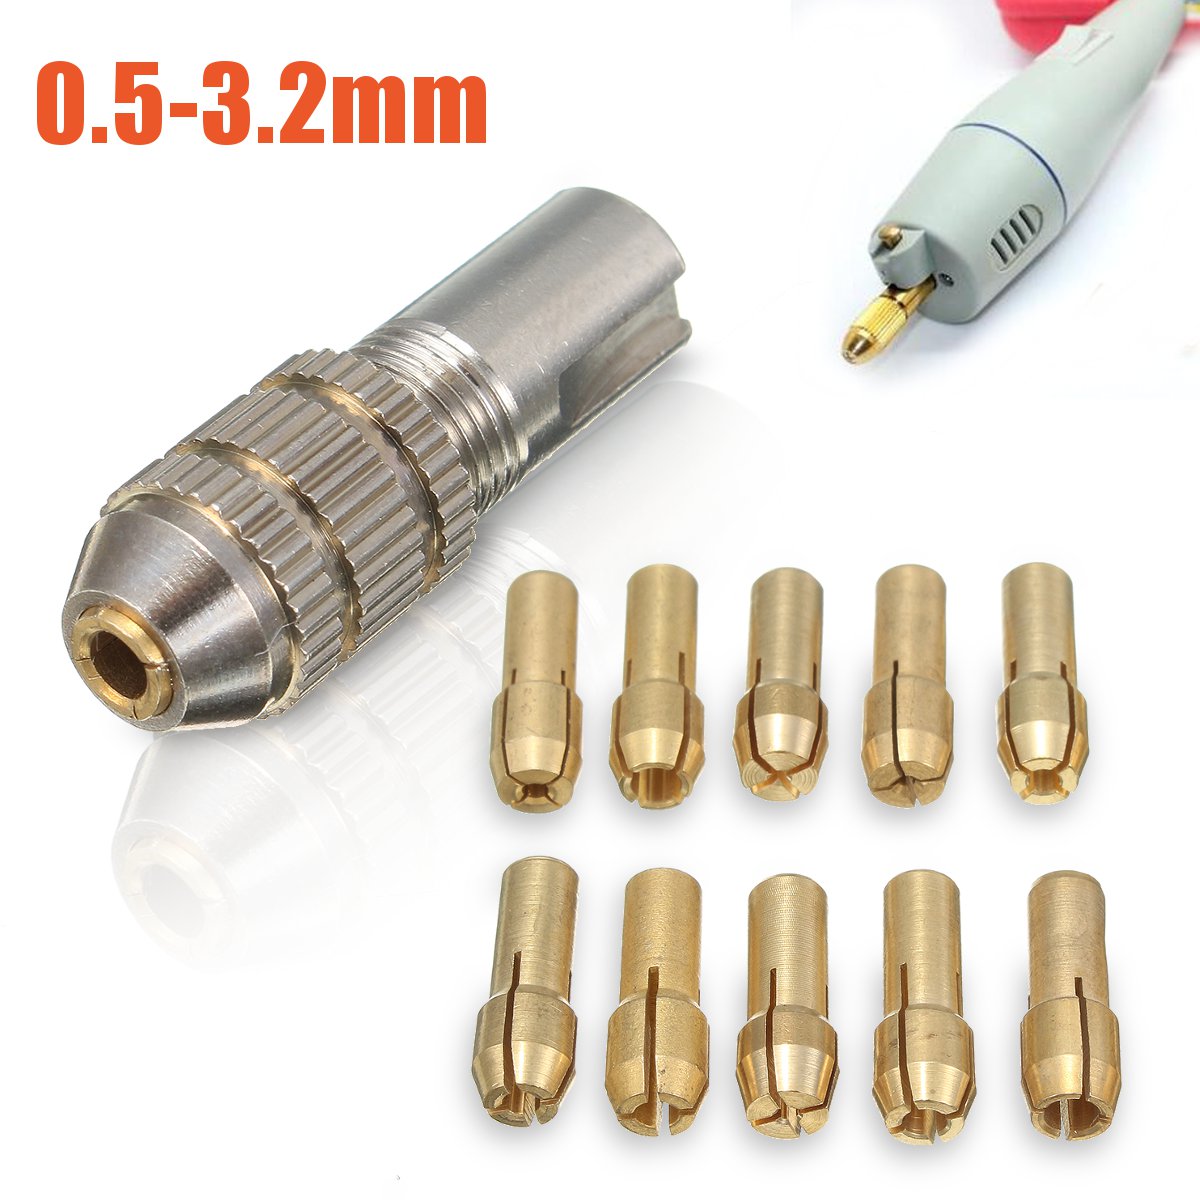 

11pcs 0.5-3.2mm Mini Electric Drill Bit Collet Set Fit for Micro Small Twist Chuck